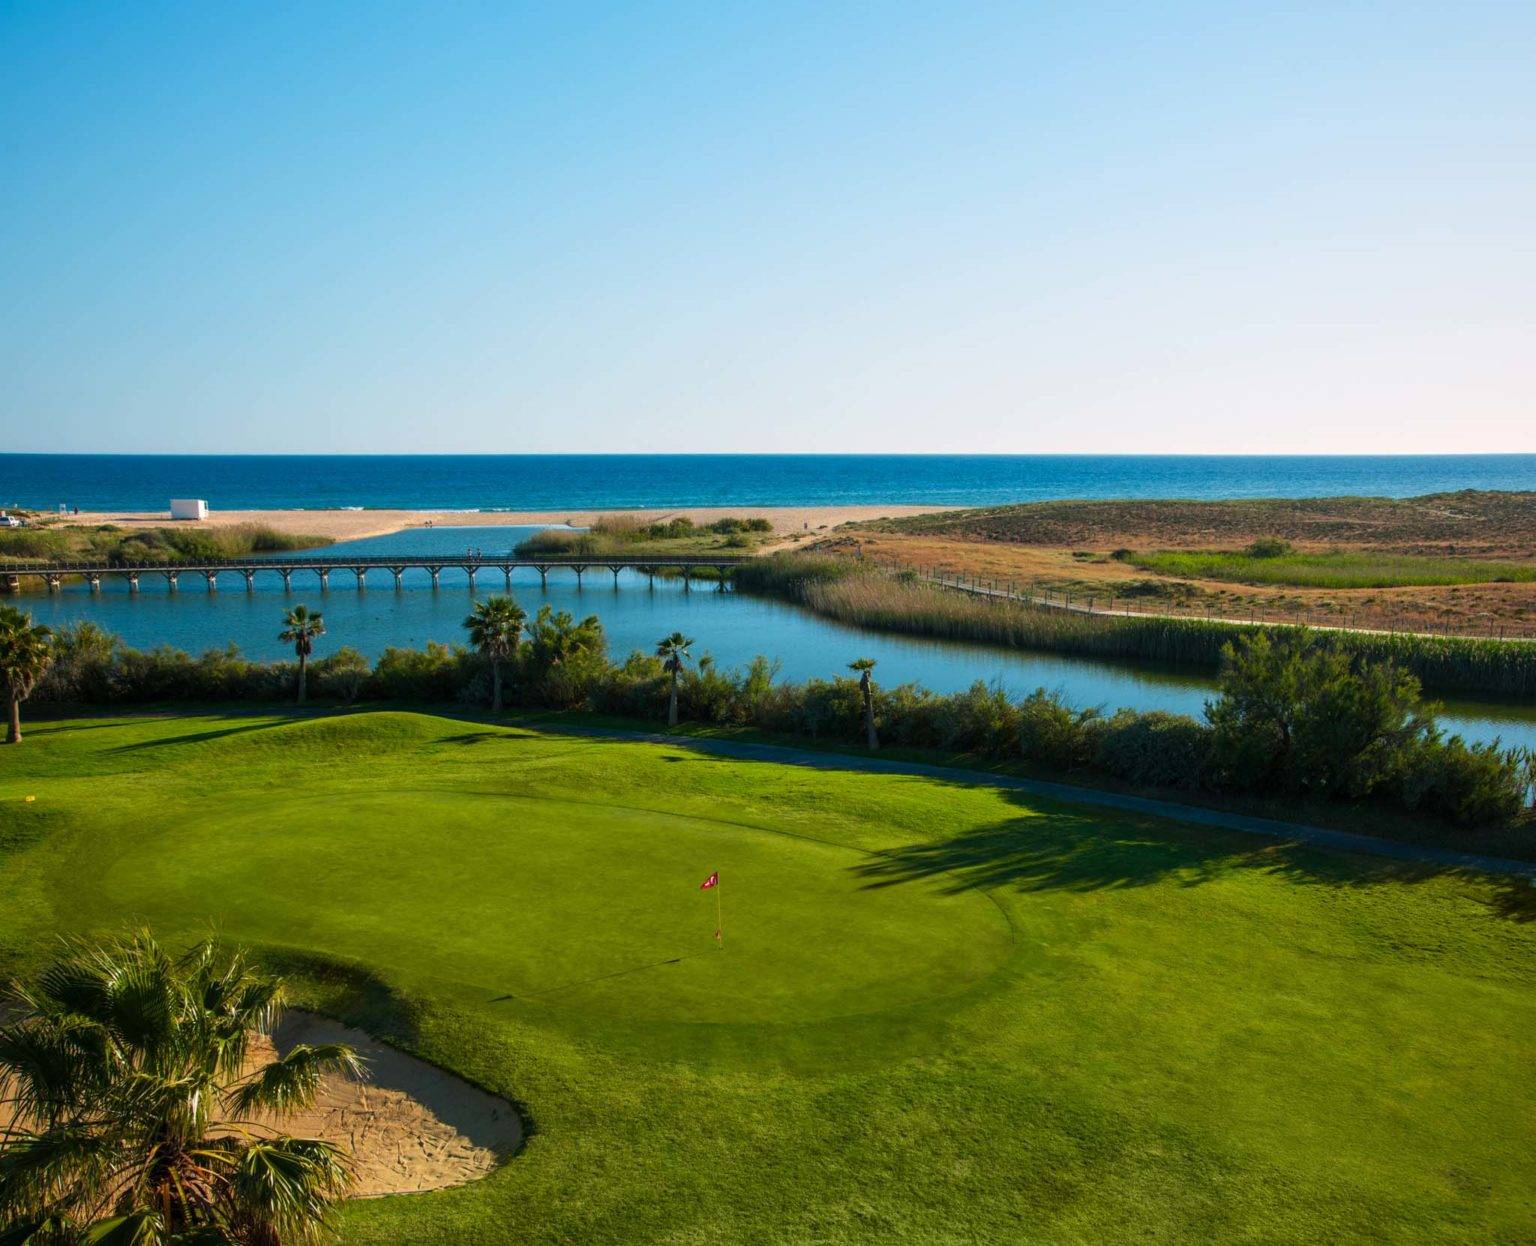 Salgados Golf Course overlooking the beach.